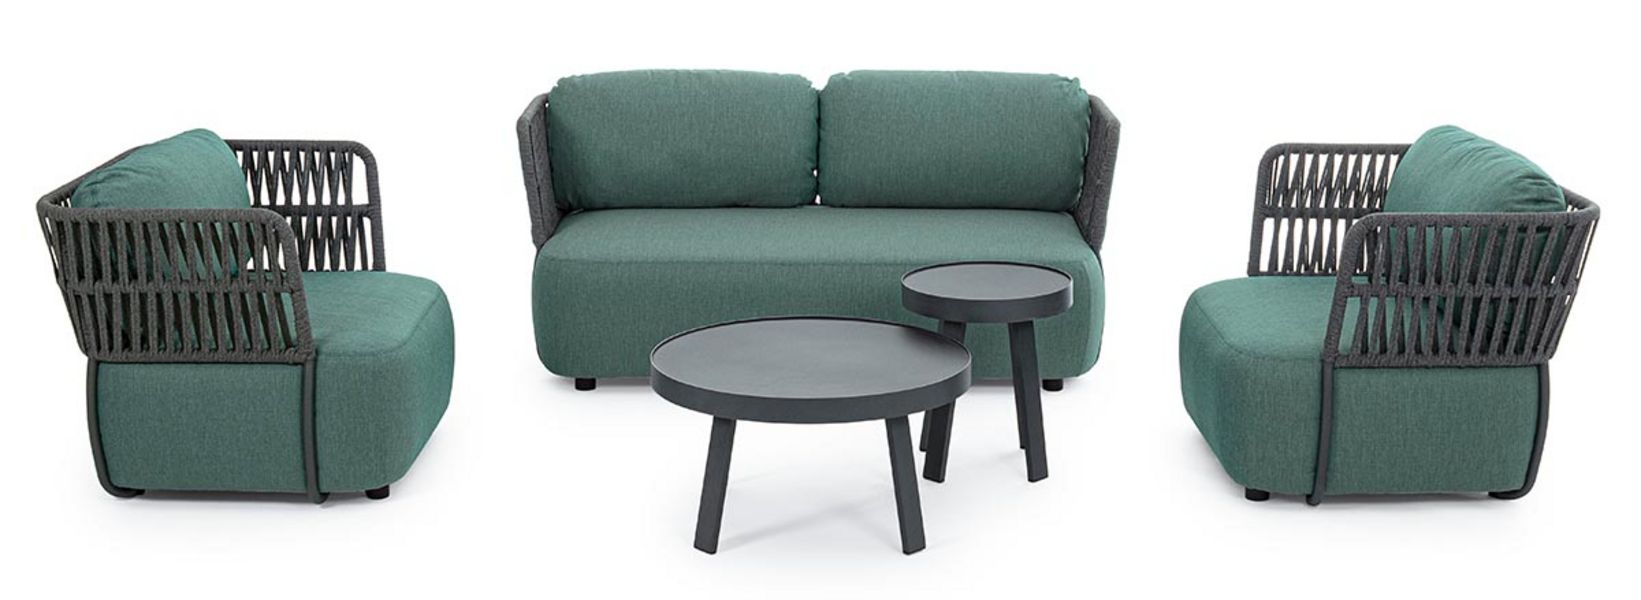 Gartensofa grün mit passenden Sessel und tisch